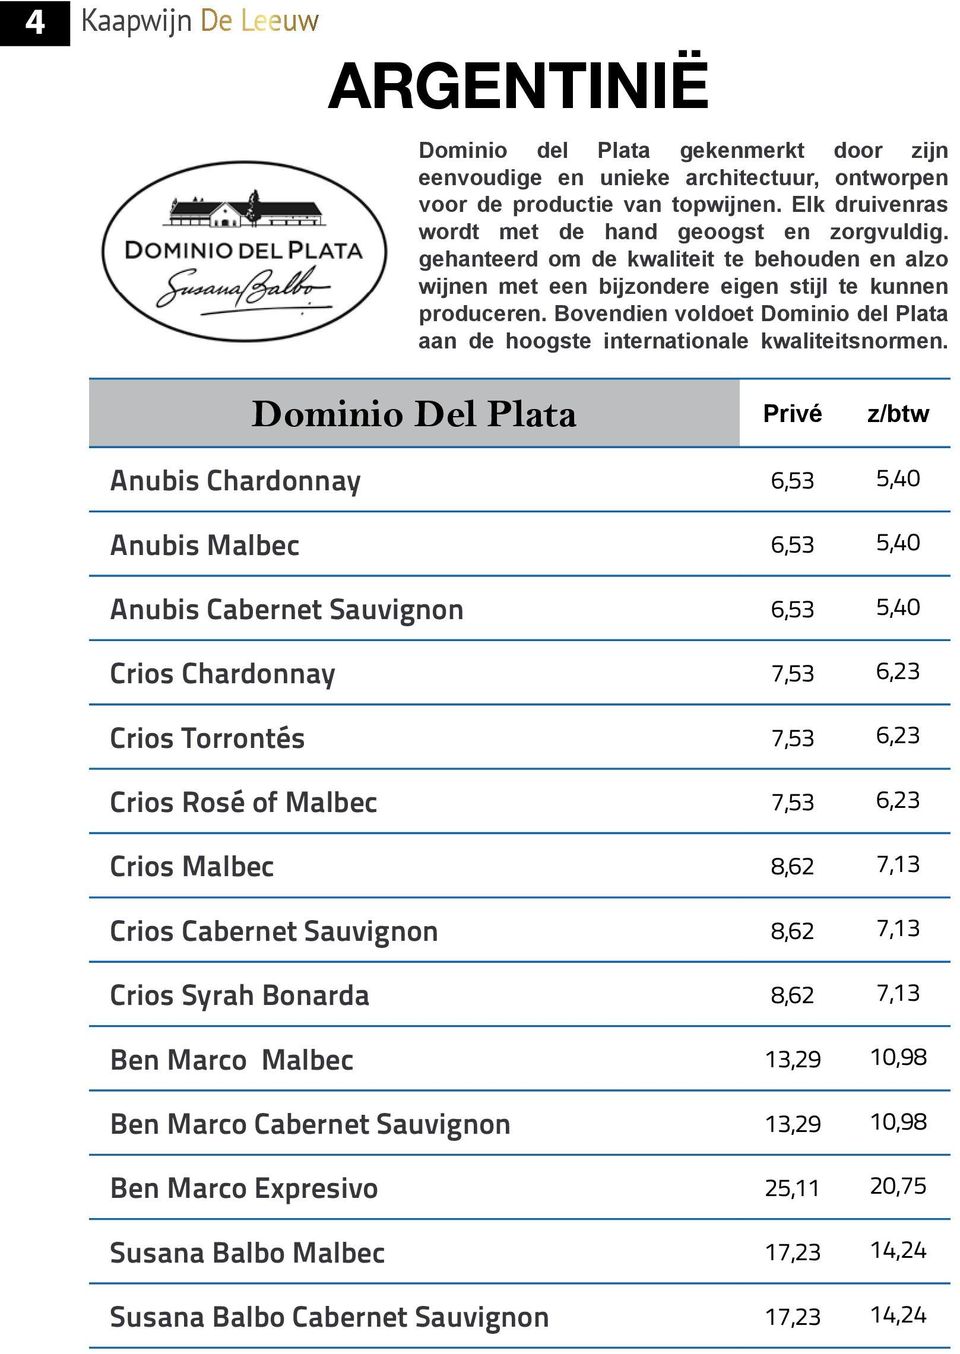 Bovendien voldoet Dominio del Plata aan de hoogste internationale kwaliteitsnormen.